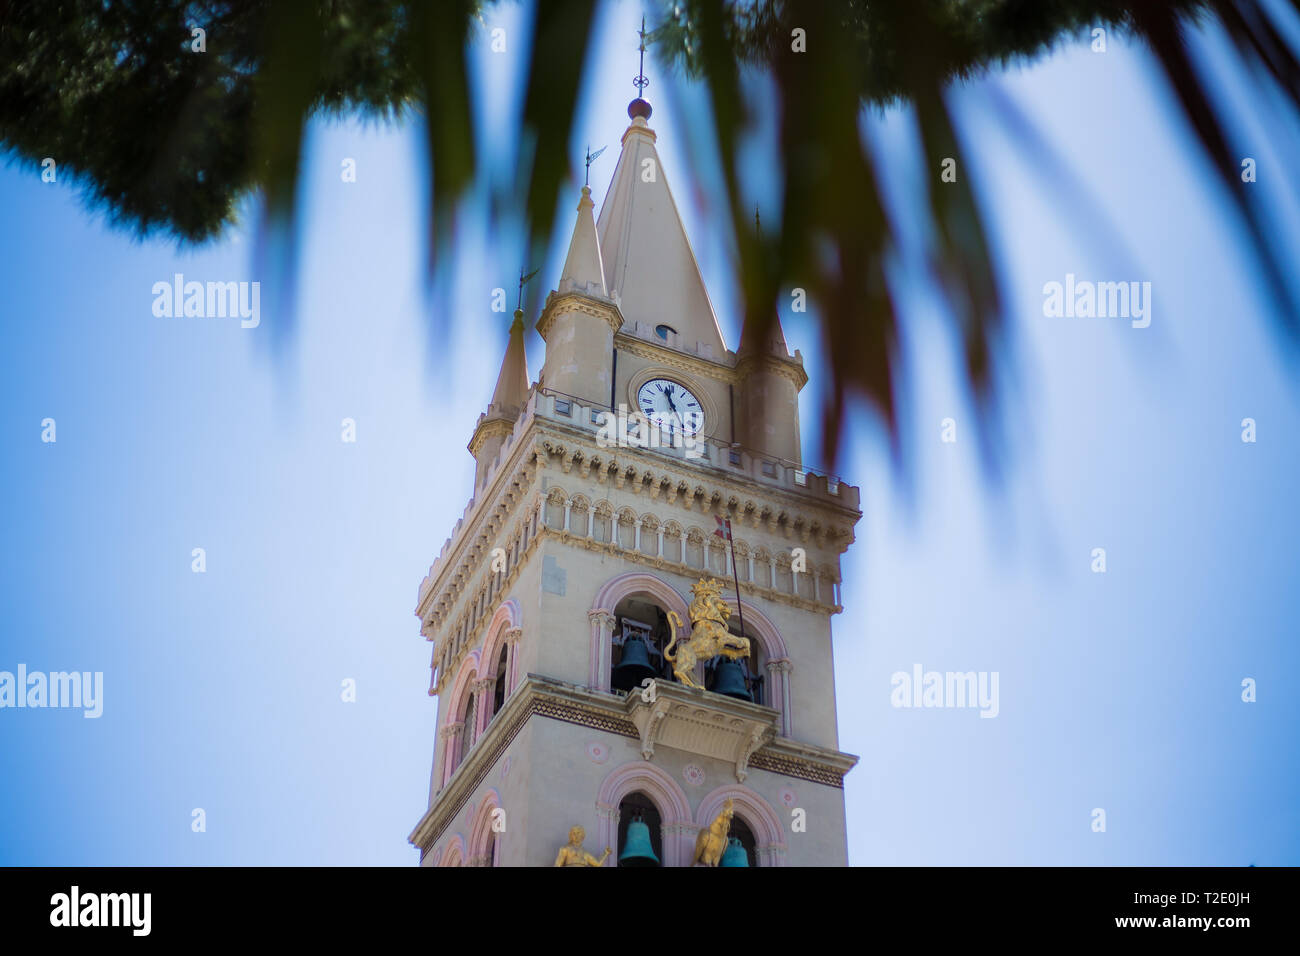 Messine, Sicile Italie, à l'intermédiaire d'un arbre, à l'horloge astronomique de la cathédrale de Messine. Banque D'Images